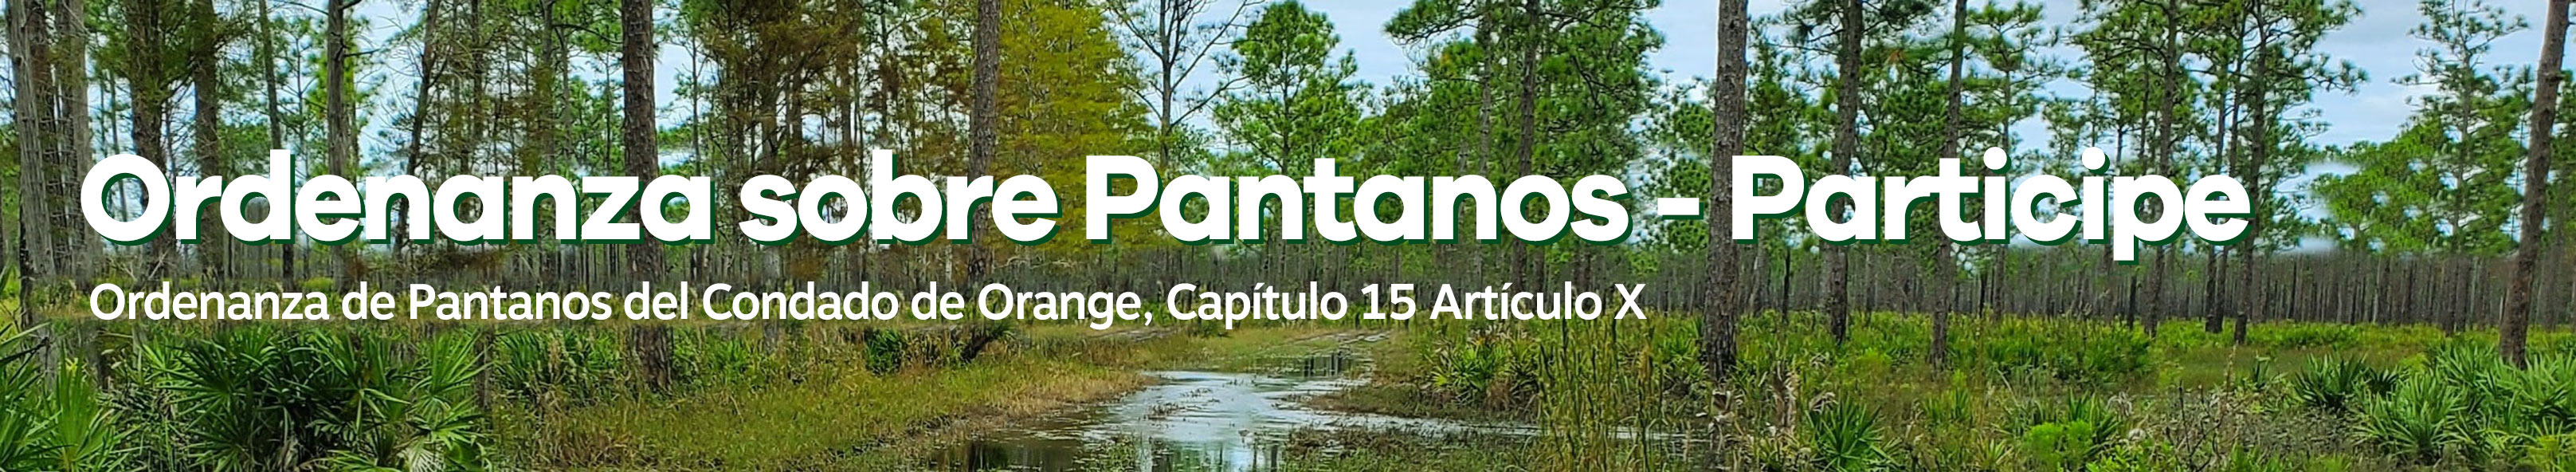 Participación Pública en la Ordenanza de Pantanos -  Ordenanza de Pantanos del Condado de Orange, Capítulo 15 Artículo X